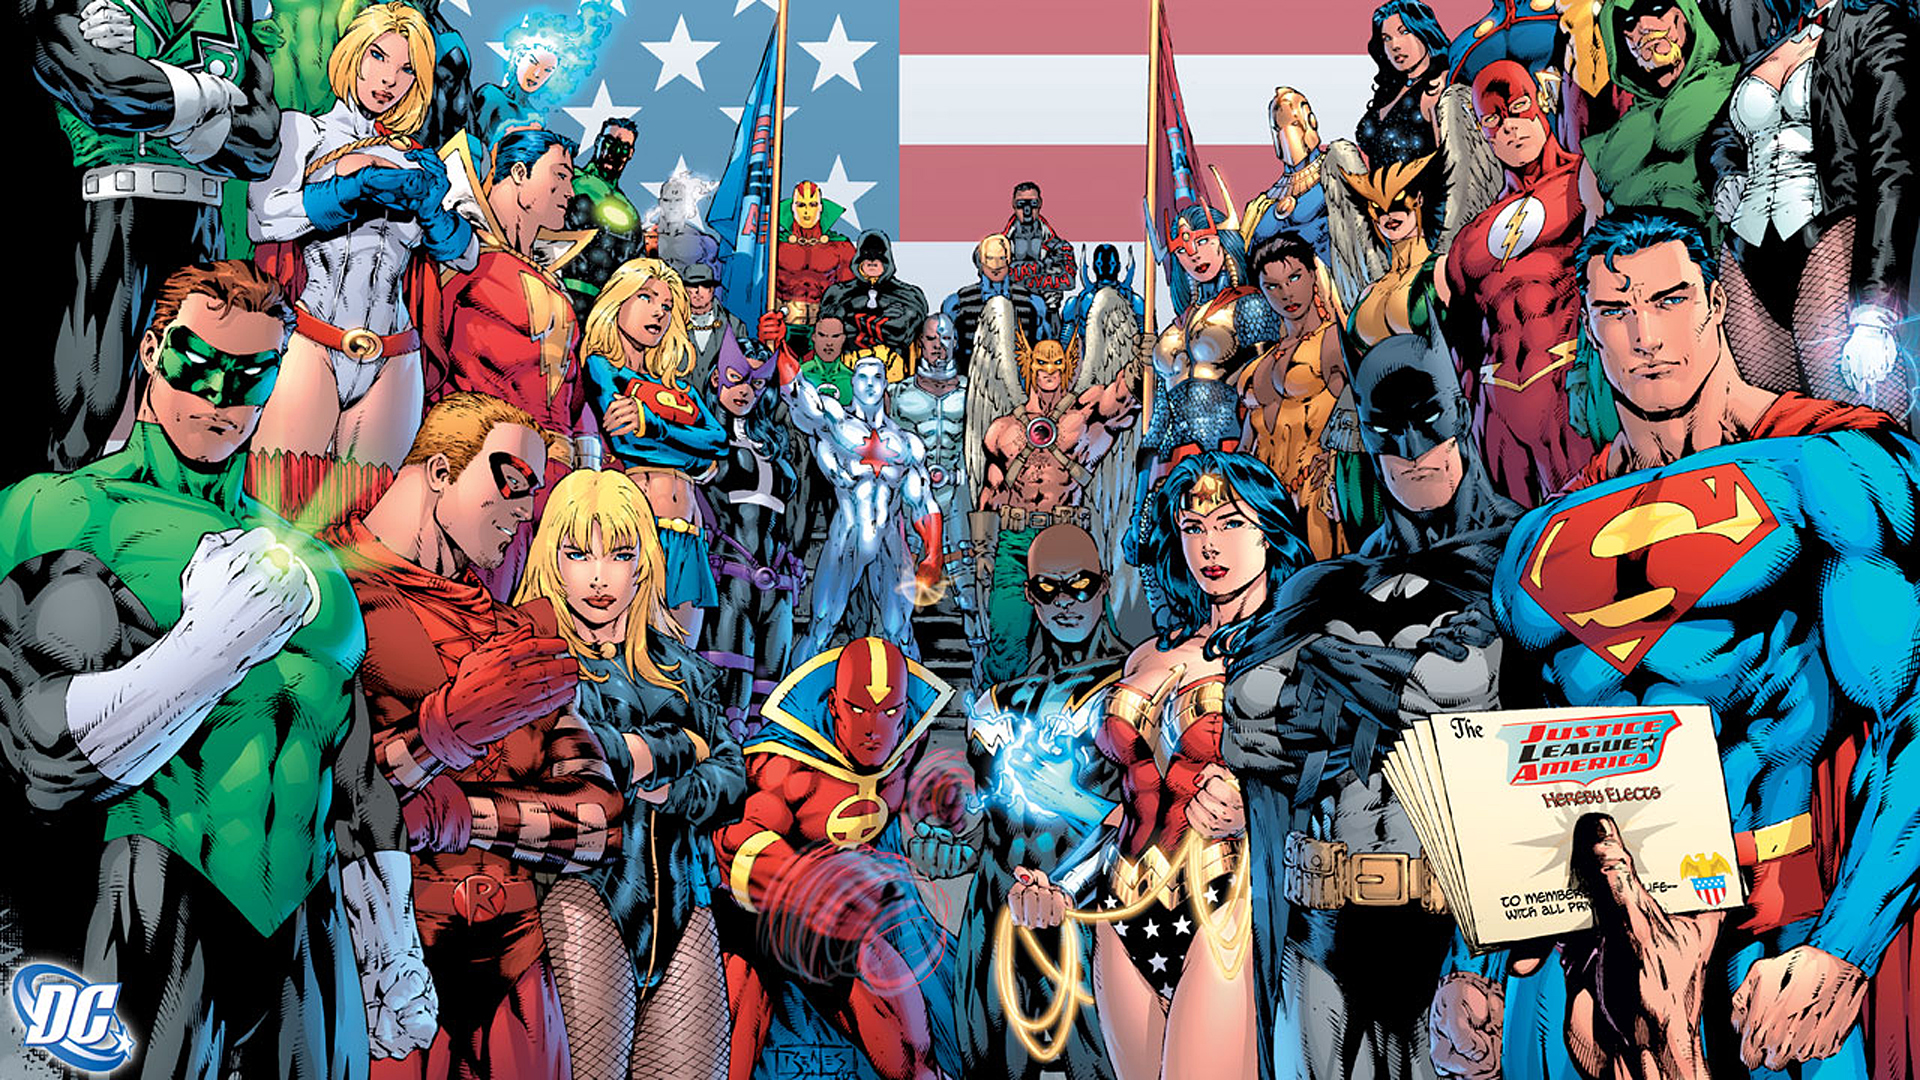 fond d'écran justice league,des bandes dessinées,super héros,personnage fictif,fiction,héros